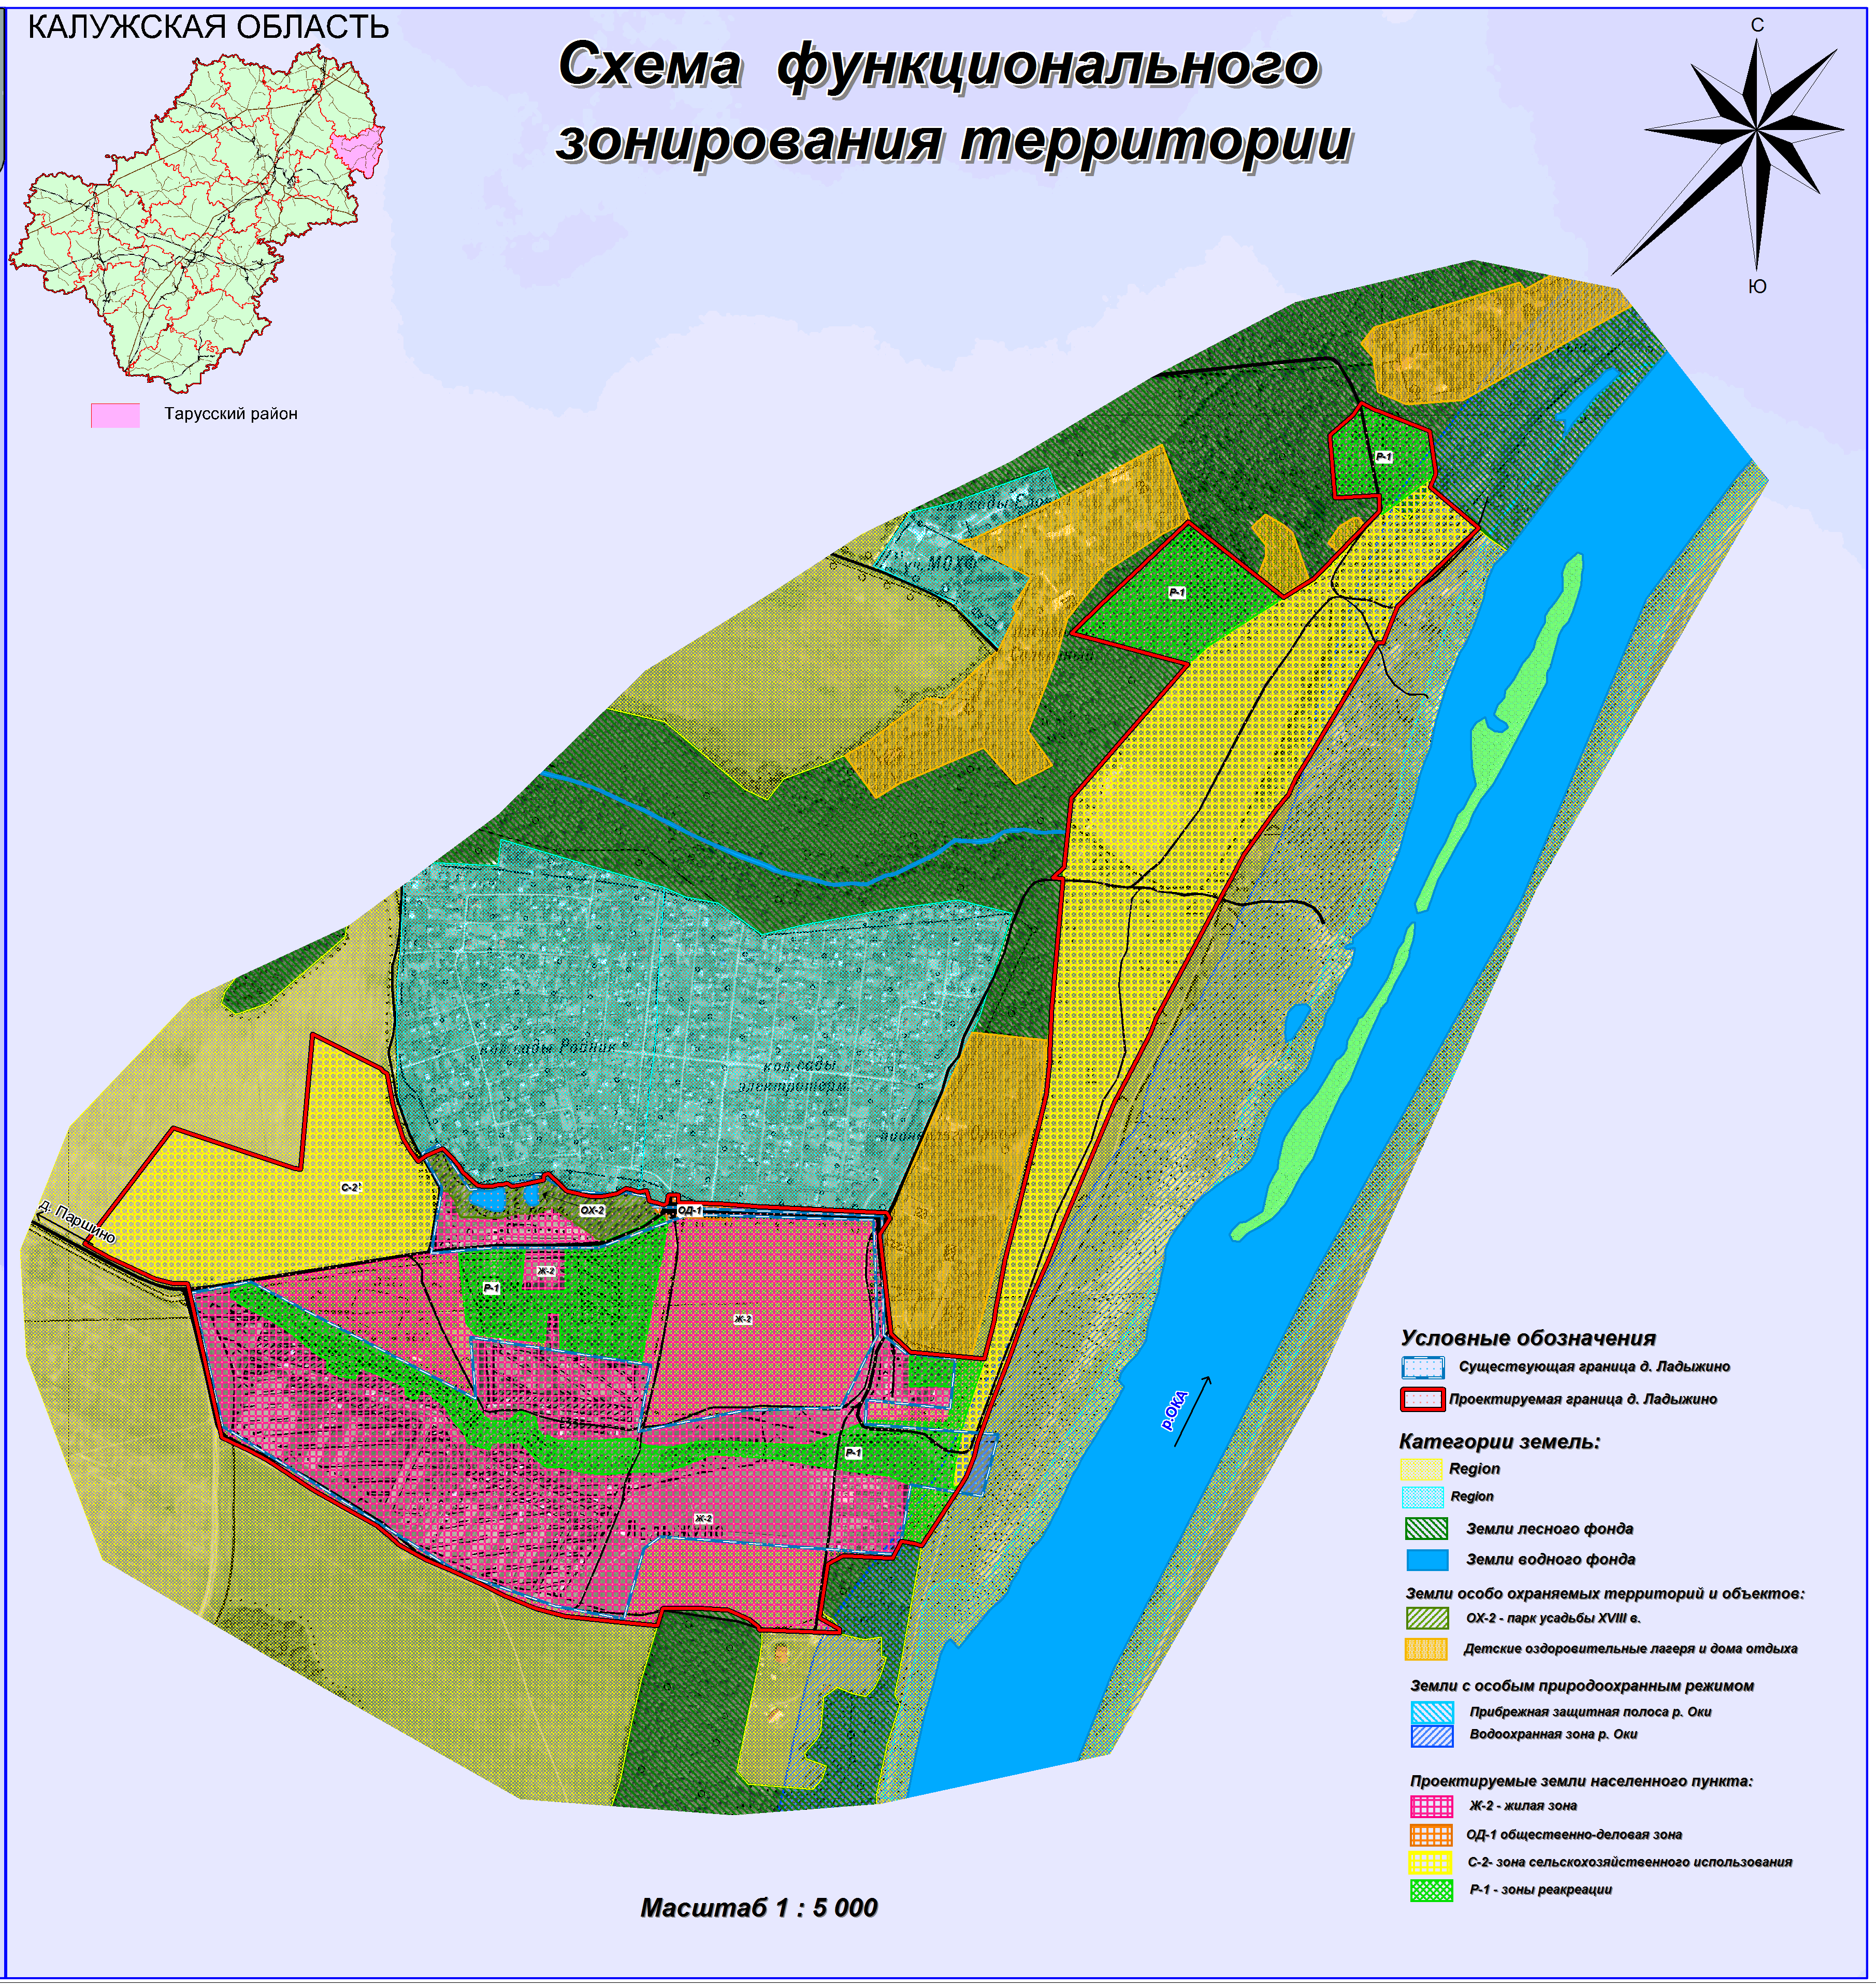 Схема функционального зонирования территории города